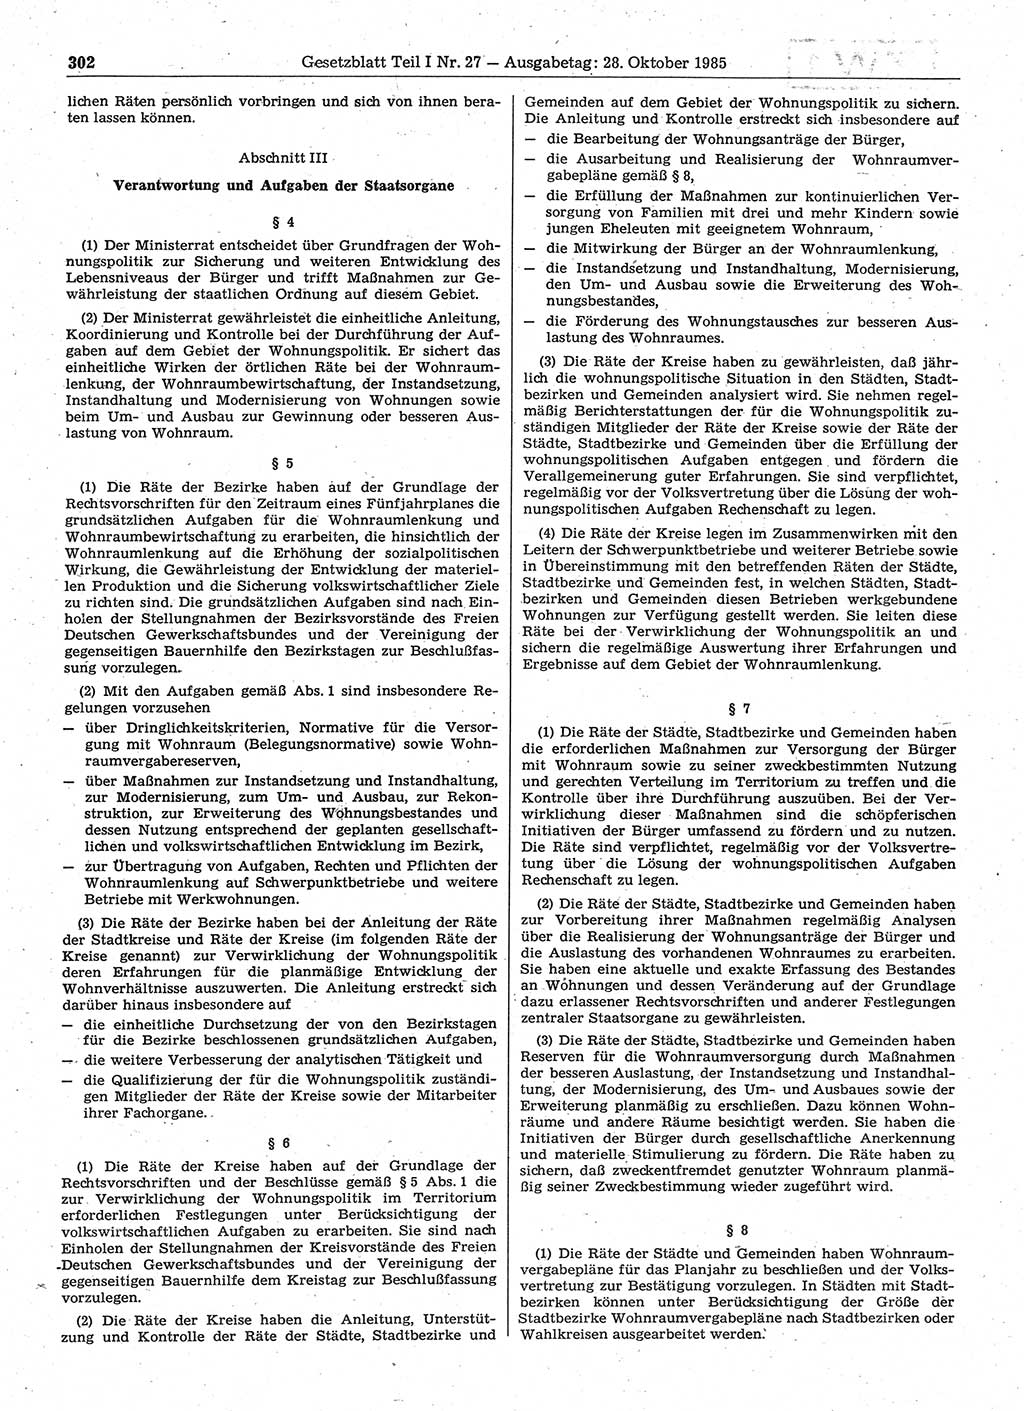 Gesetzblatt (GBl.) der Deutschen Demokratischen Republik (DDR) Teil Ⅰ 1985, Seite 302 (GBl. DDR Ⅰ 1985, S. 302)